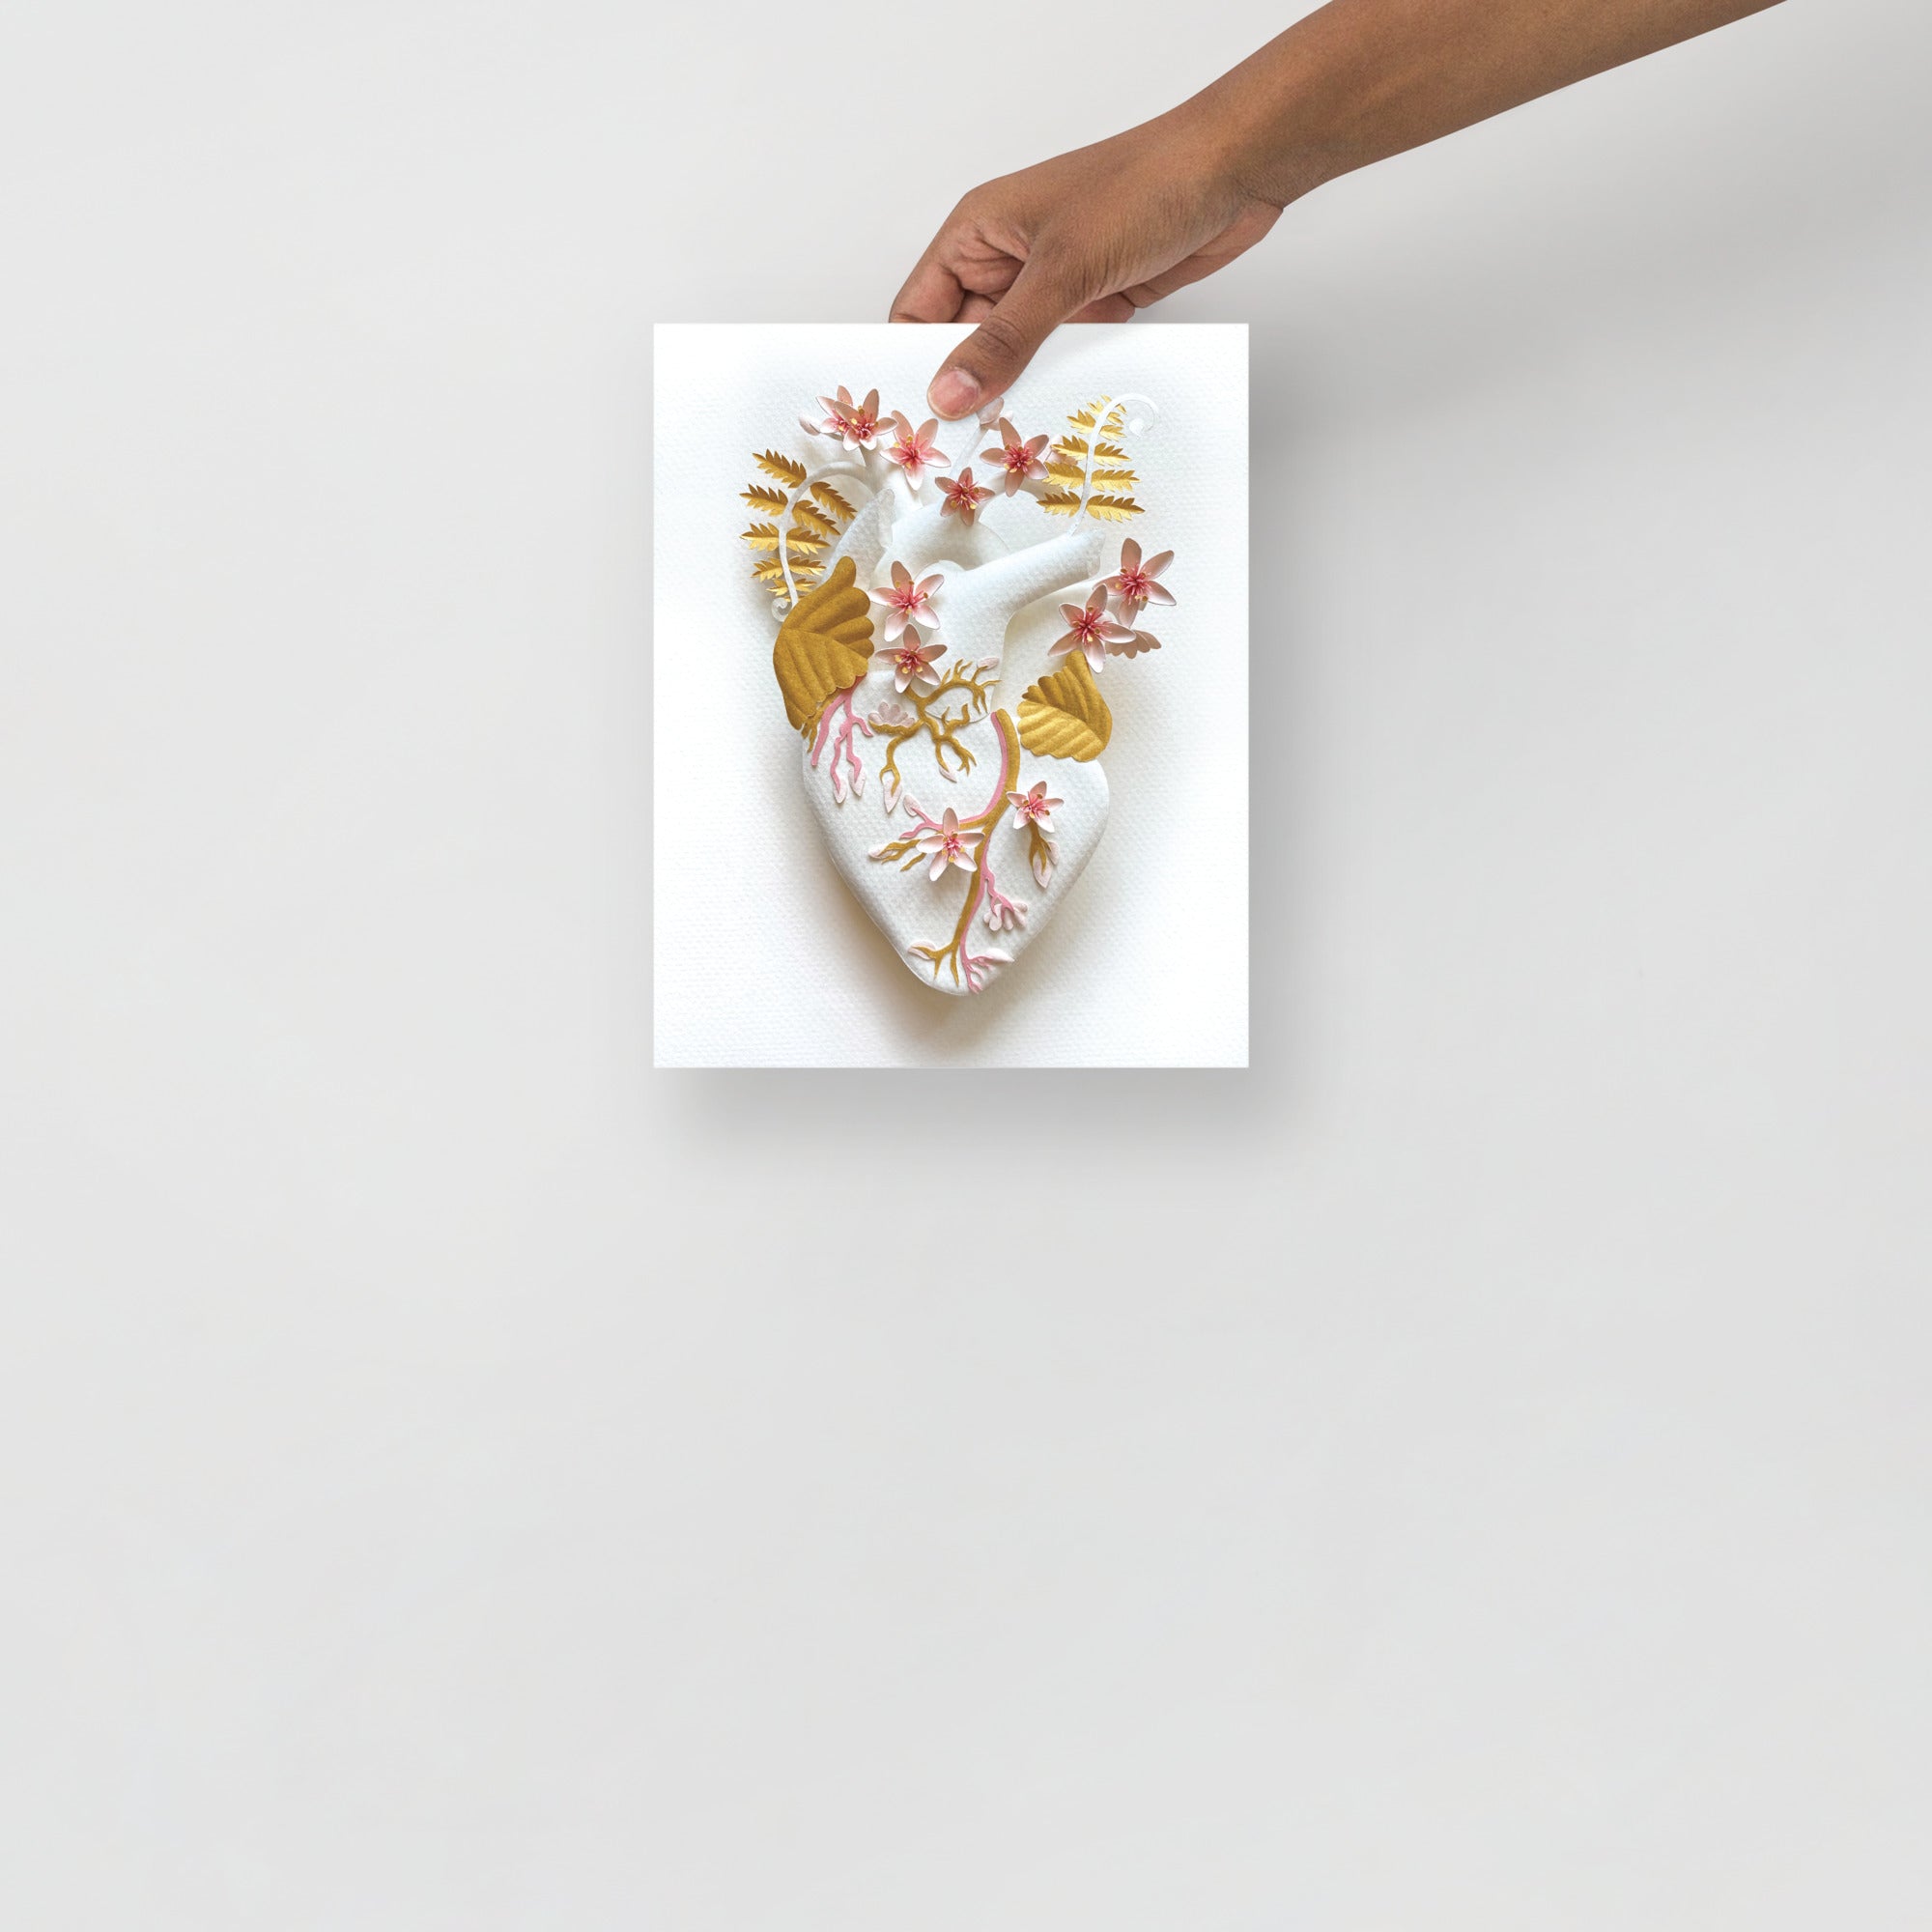 Healing Heart: Golden Flow 8" x 10" print